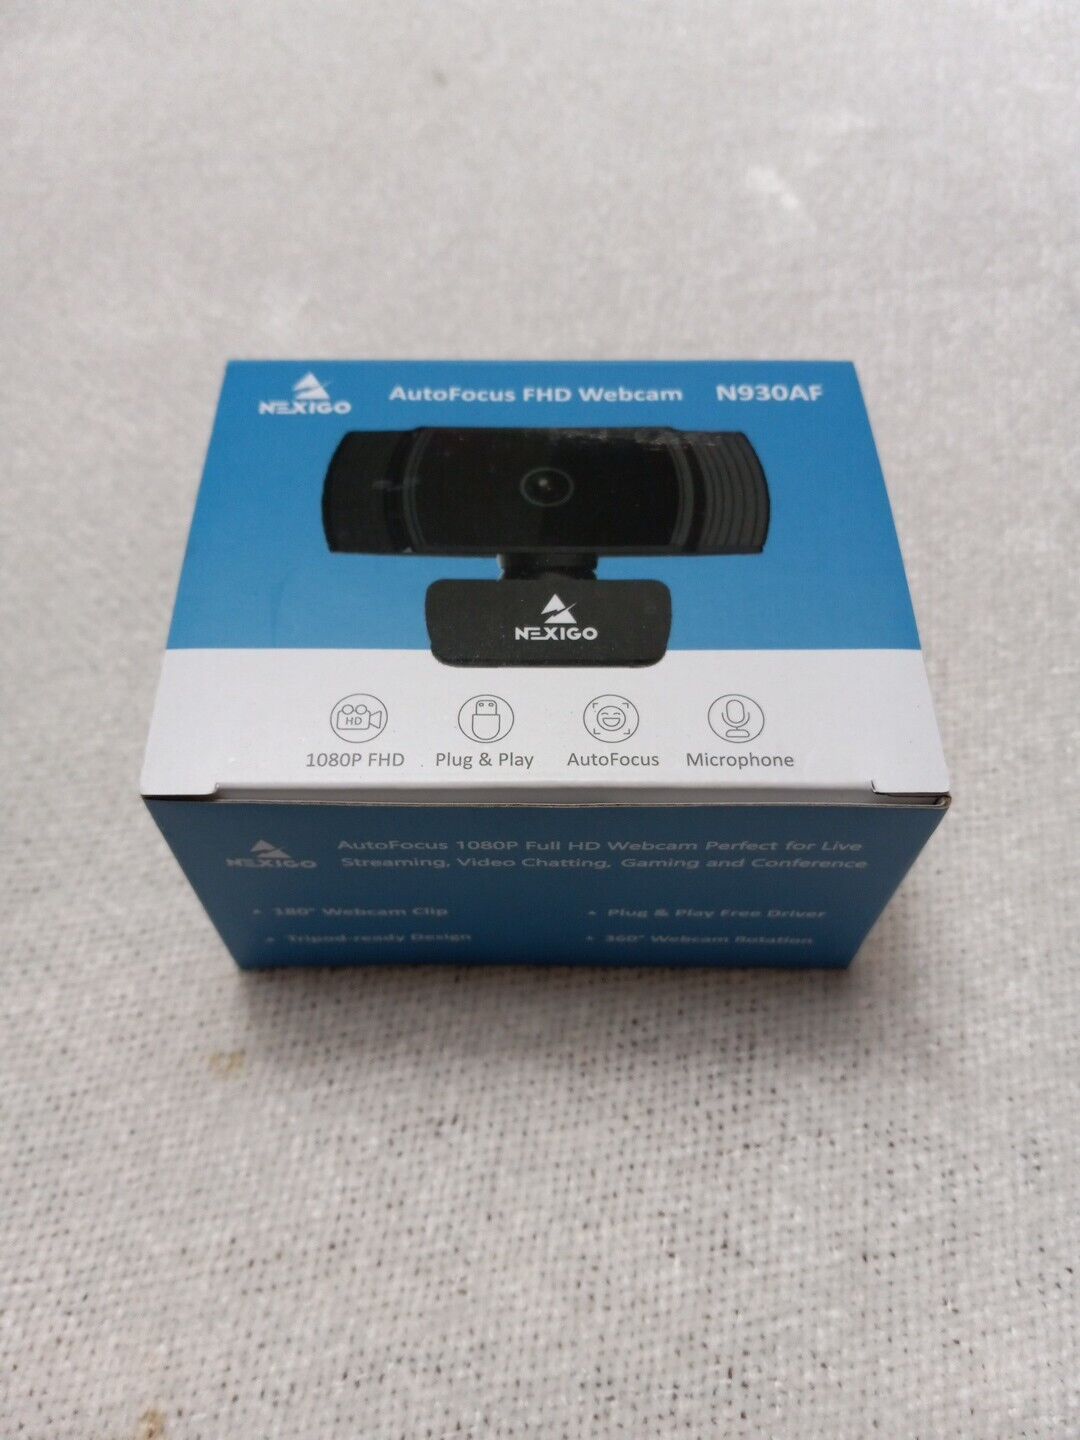 NexiGo N930AF AutoFocus Webcam with Stereo Microphone 1080p FHD USB Web Camera